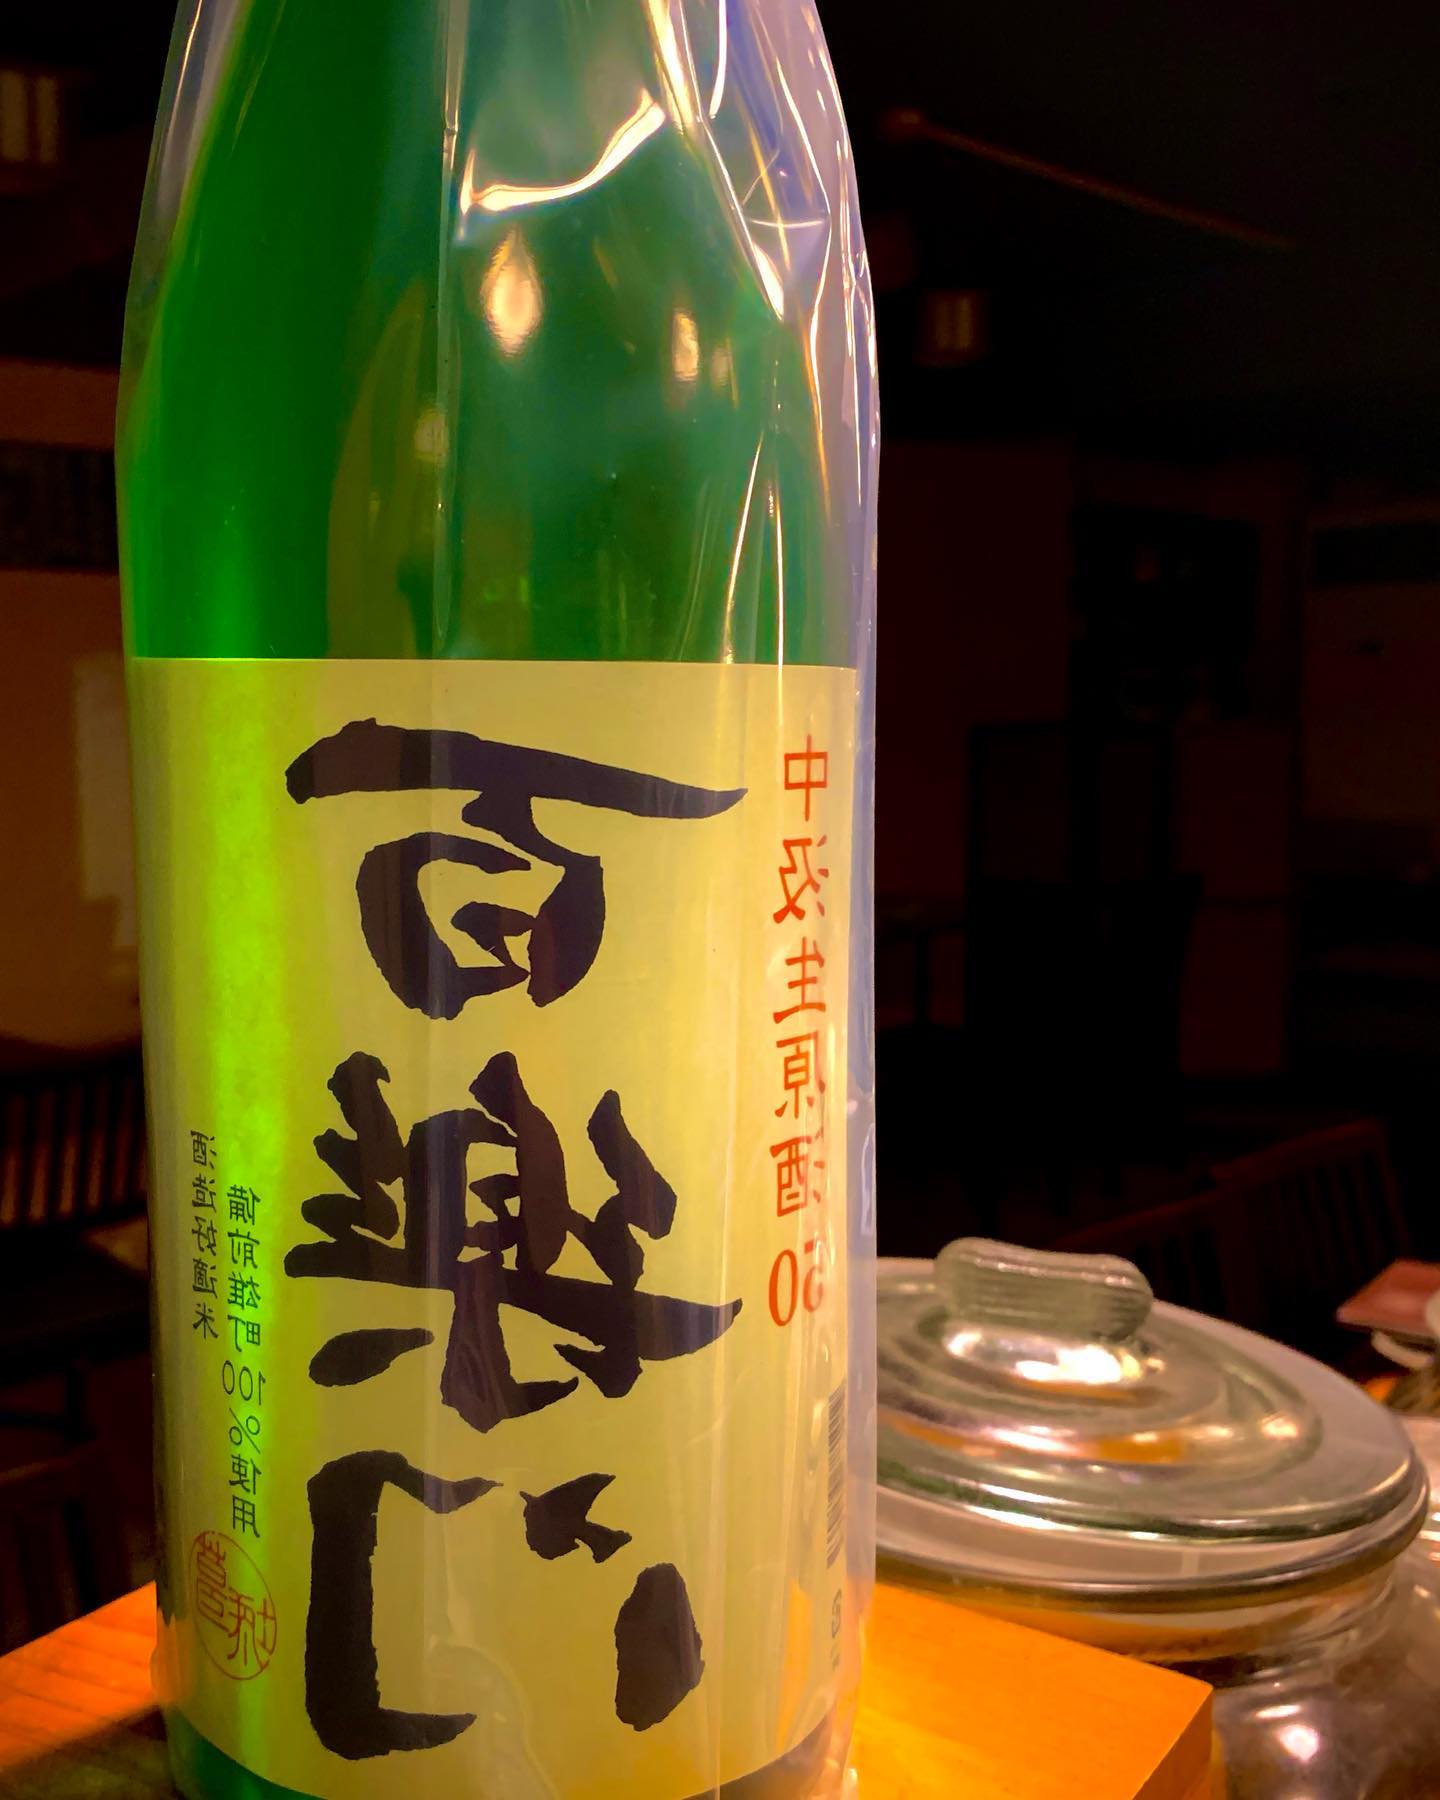 今日の日本酒は
「裏/百楽門」

岡山県産雄町で作られ吟醸酵母でじっくり低温発酵によって作られた日本酒
爽やかな香りにちょっとした甘さのある日本酒なのでとても飲見やすい1本です
  #